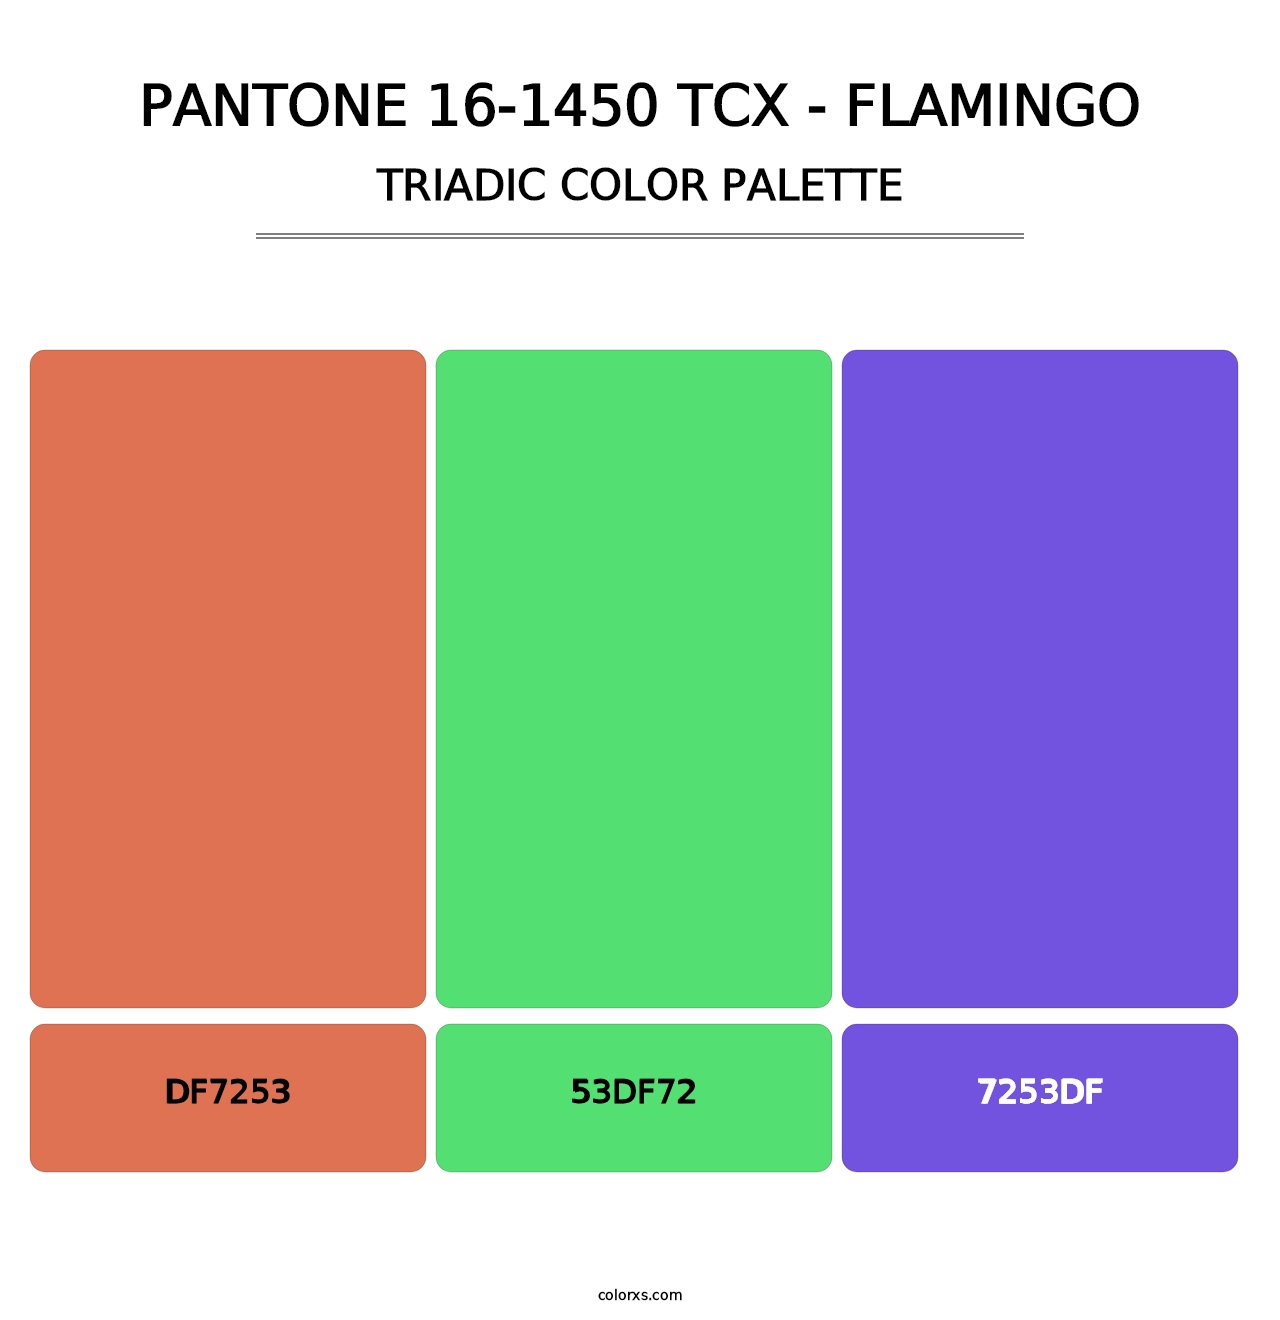 PANTONE 16-1450 TCX - Flamingo - Triadic Color Palette